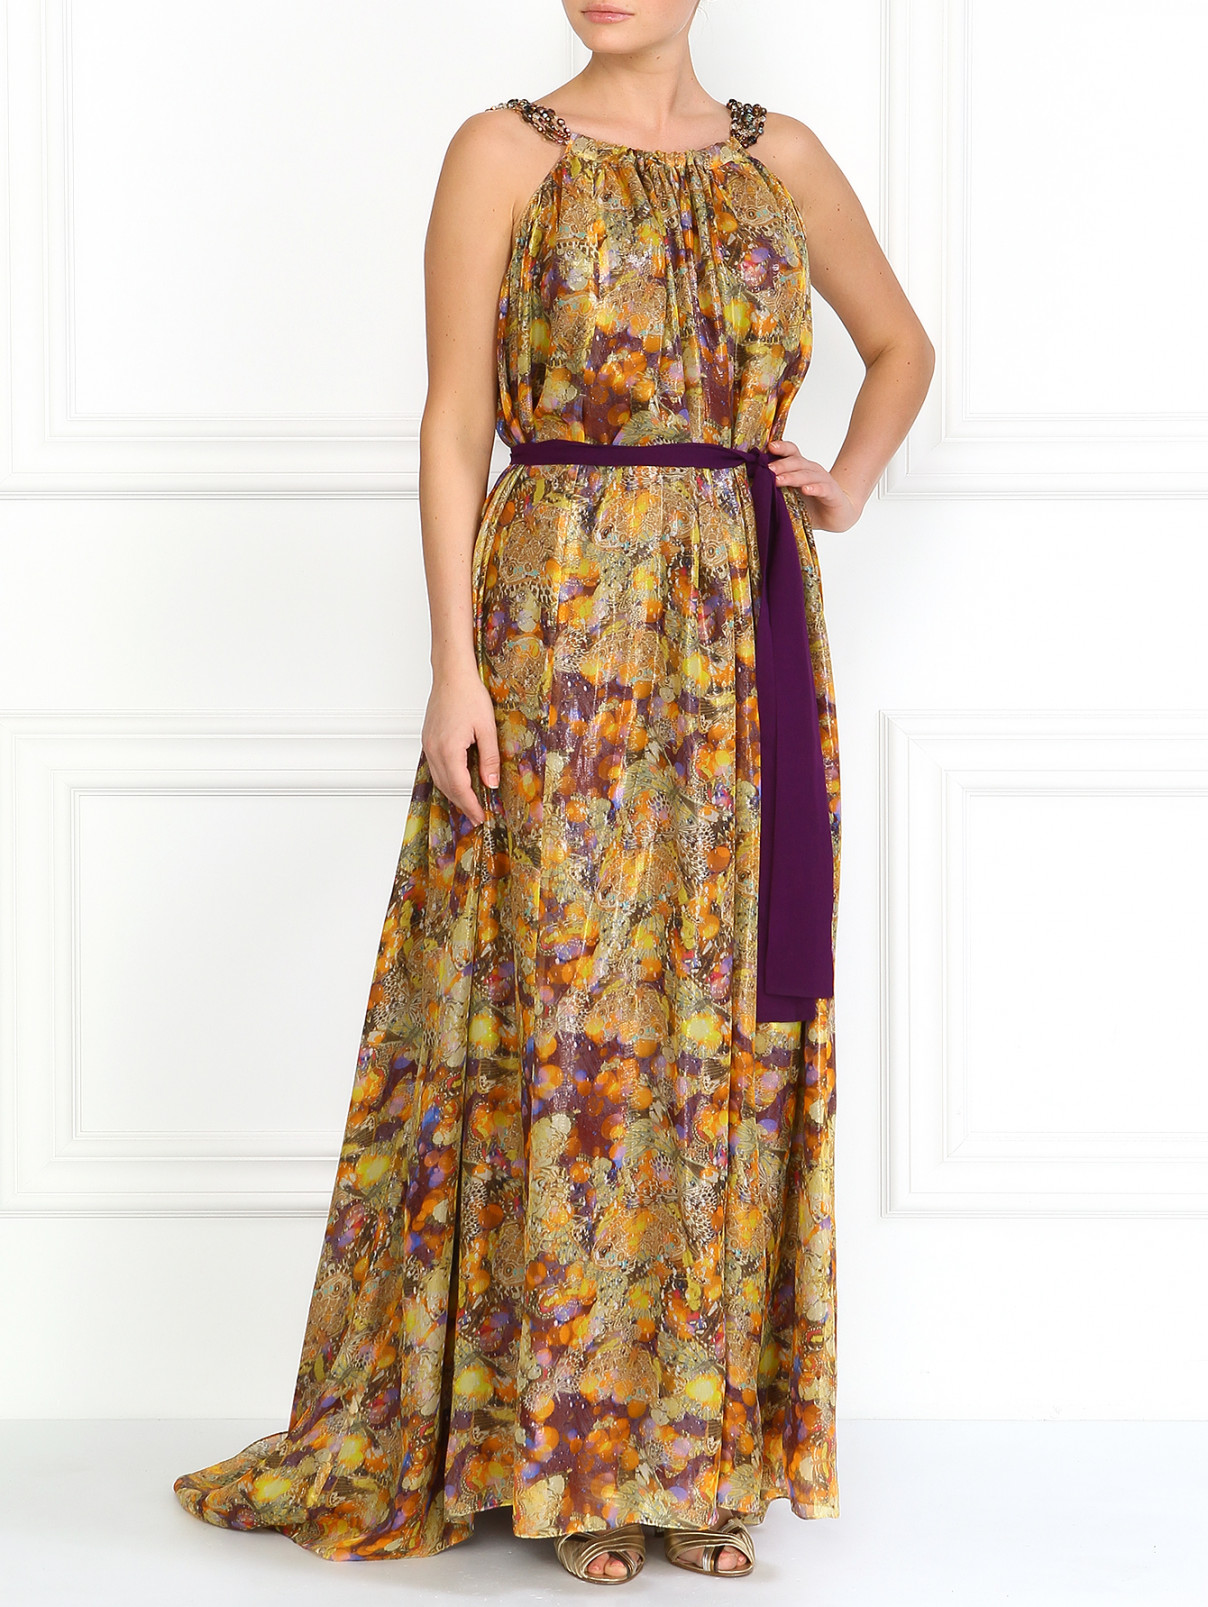 Шелковое макси-платье с абстрактным принтом A La Russe  –  Модель Общий вид  – Цвет:  Узор